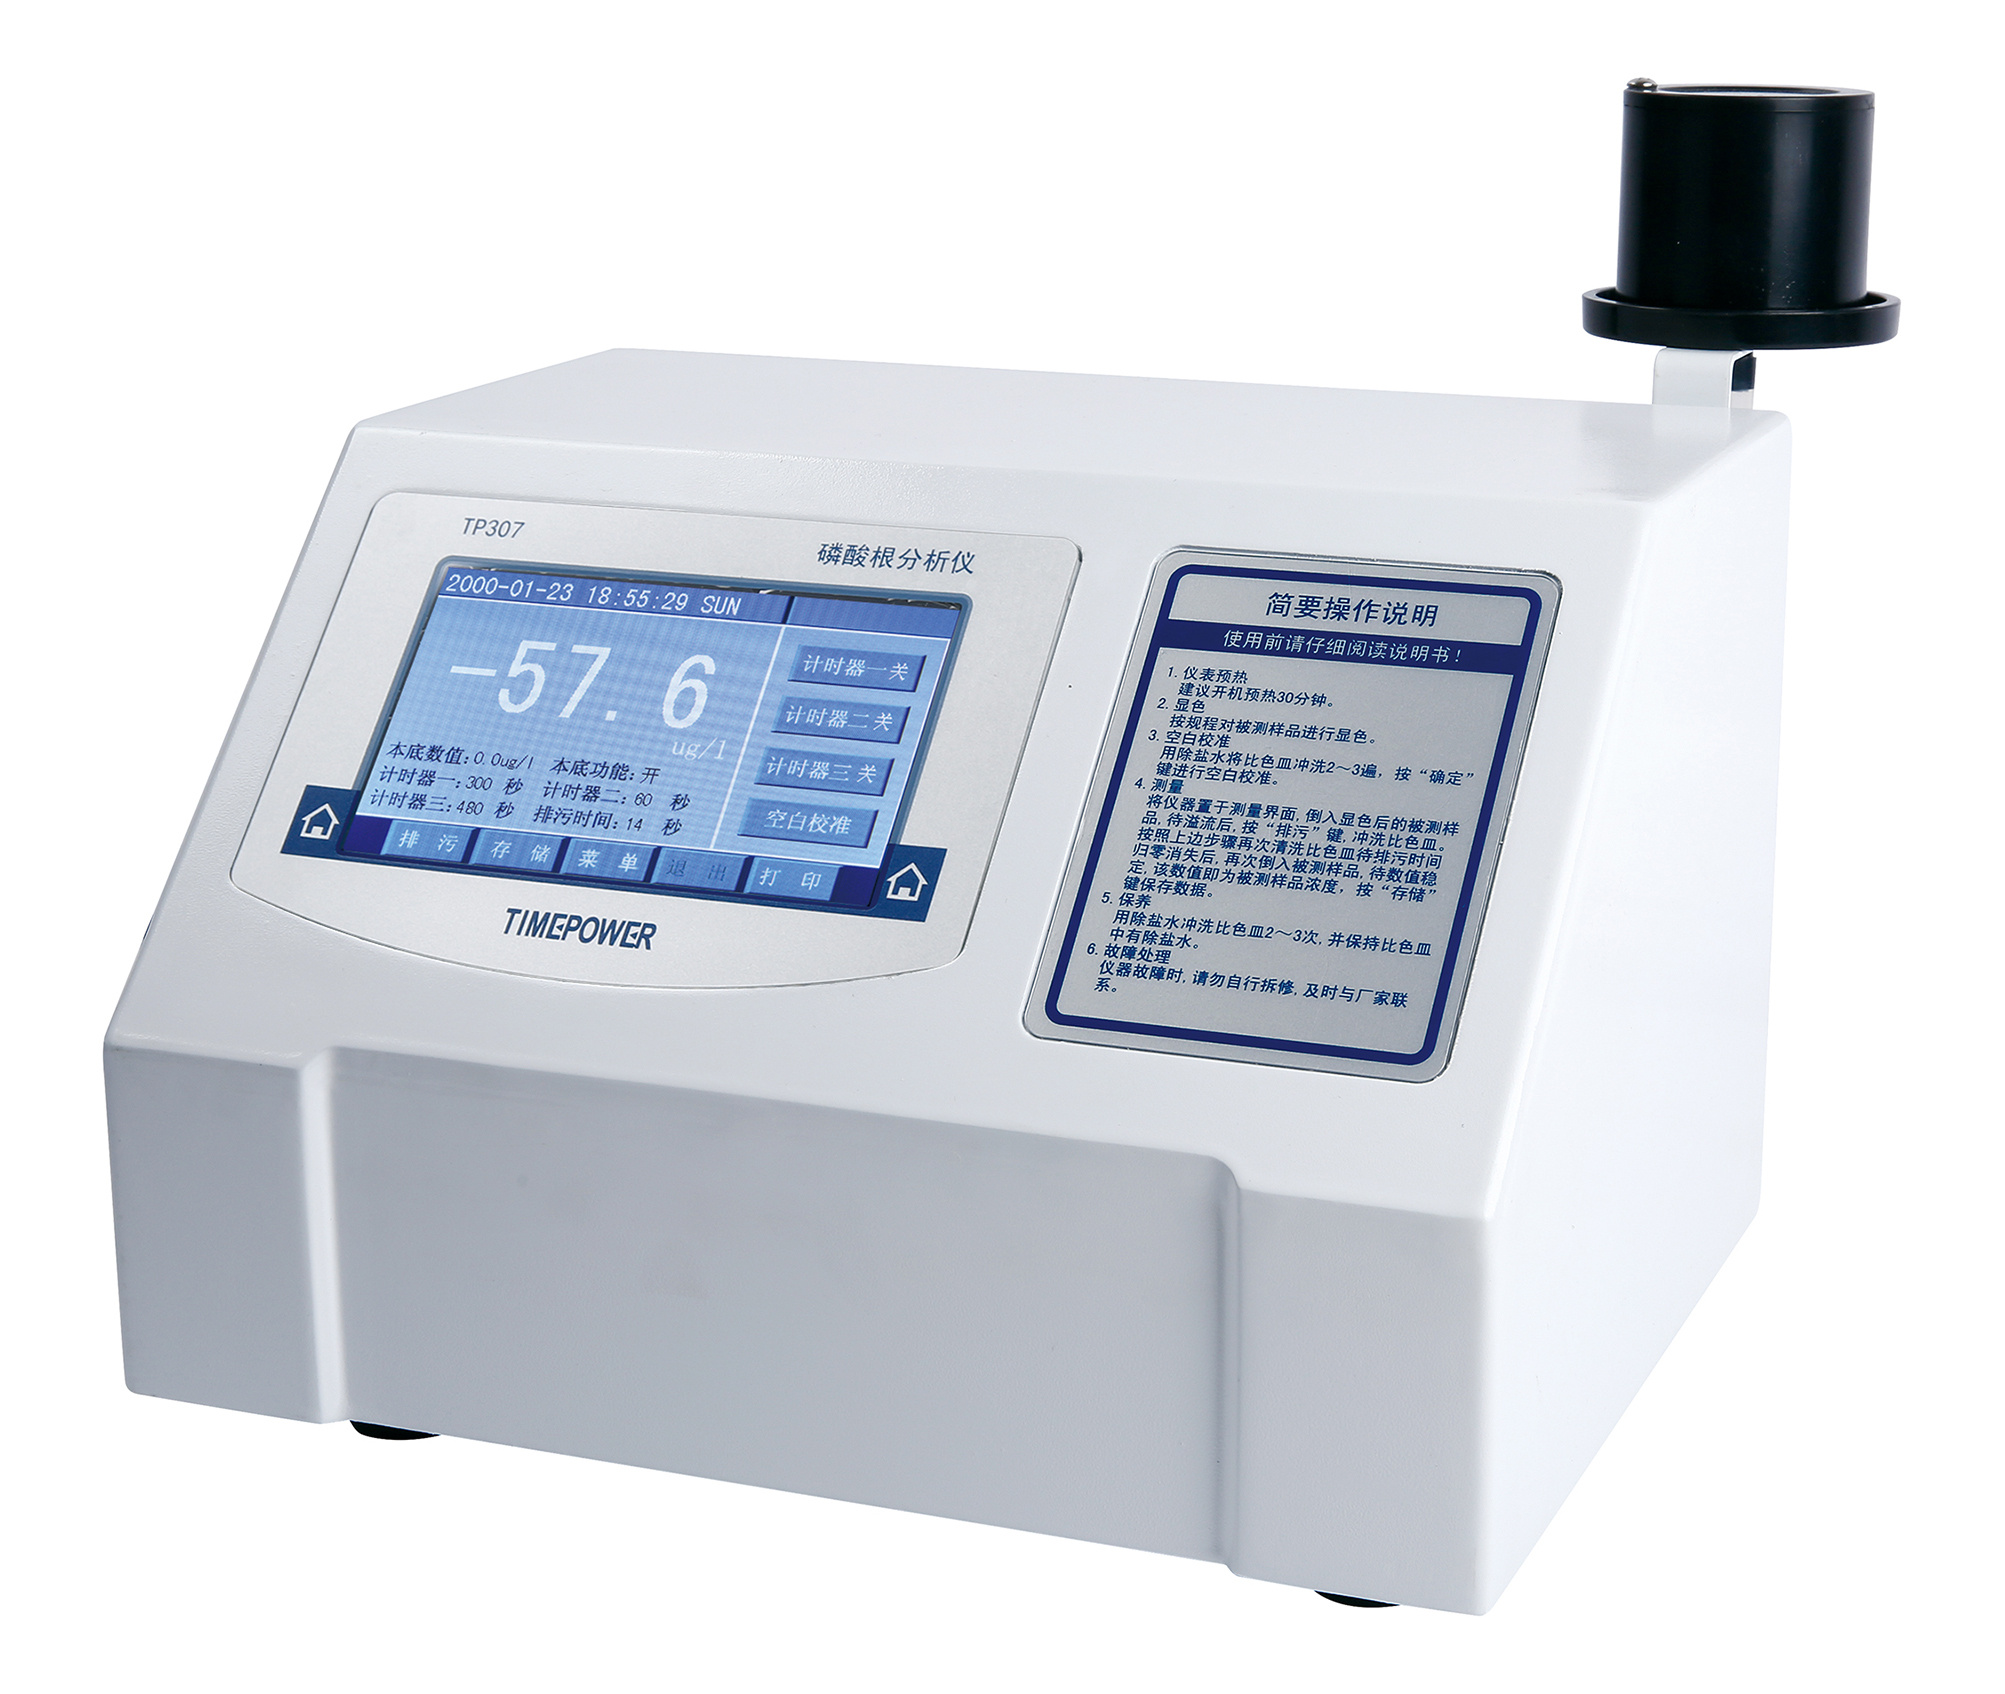 时代新维磷表实验室磷酸根分析仪TP307北京时代新维测控设备有限公司